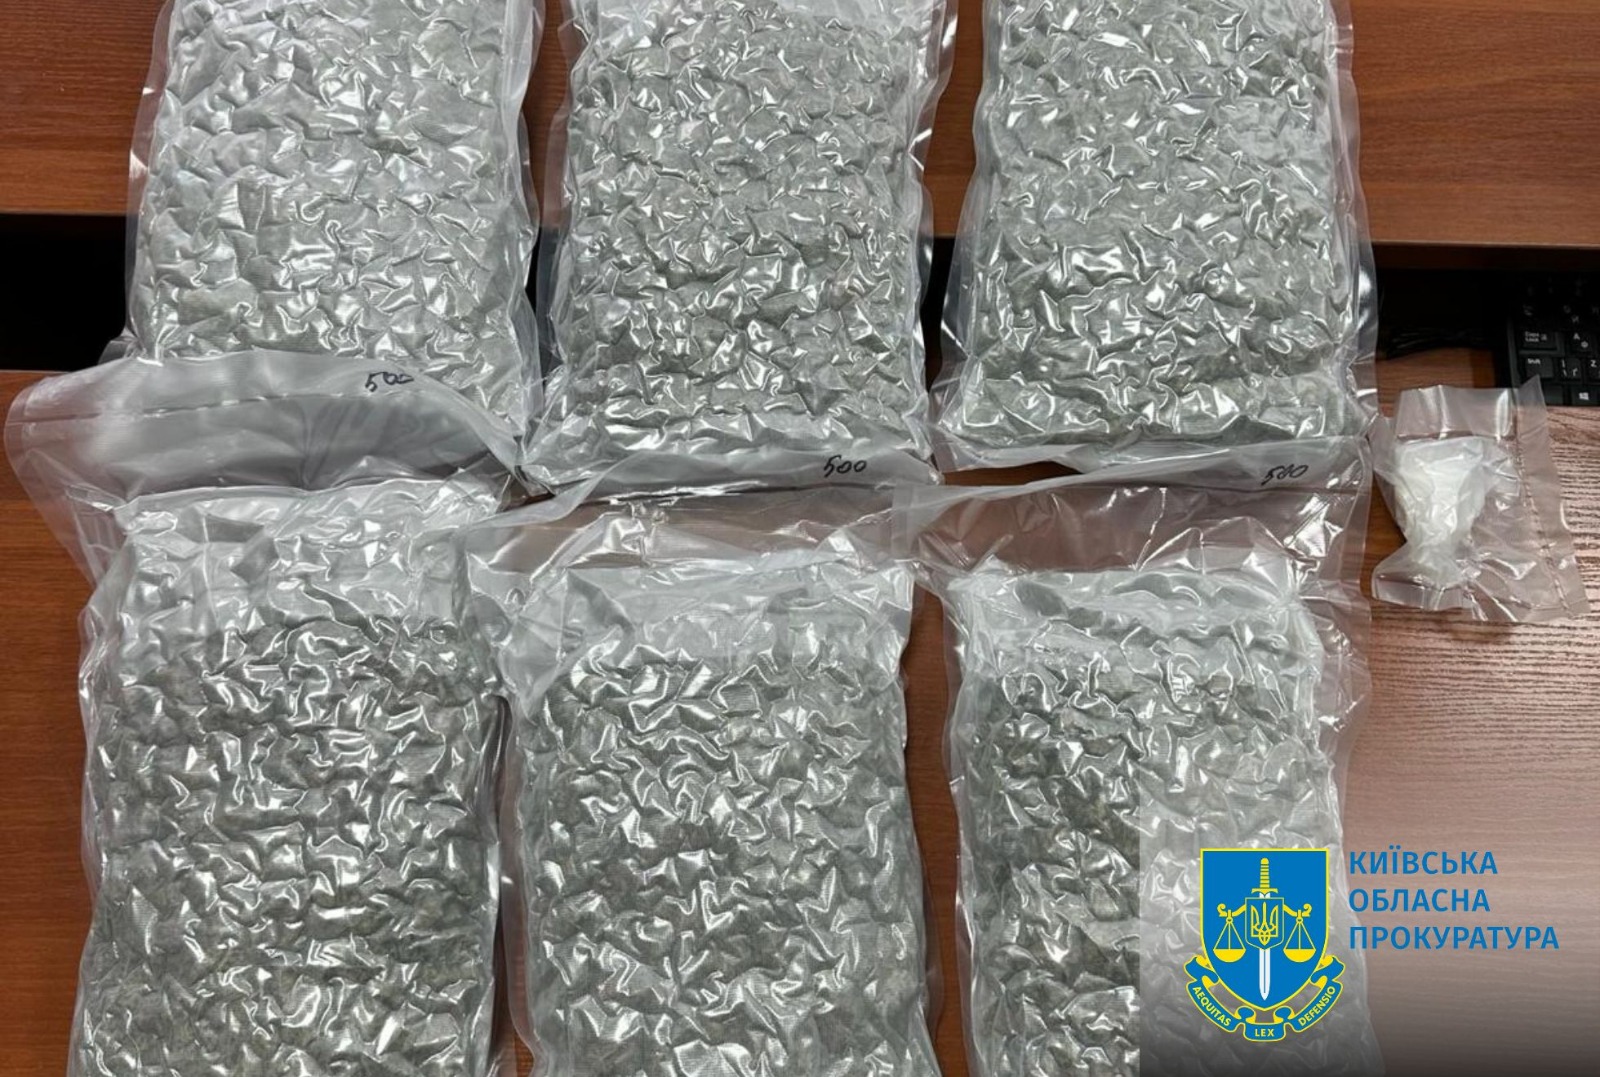 Викрито міжнародний канал контрабанди наркотиків до України під виглядом дитячих іграшок – повідомлено про підозру чотирьом особам